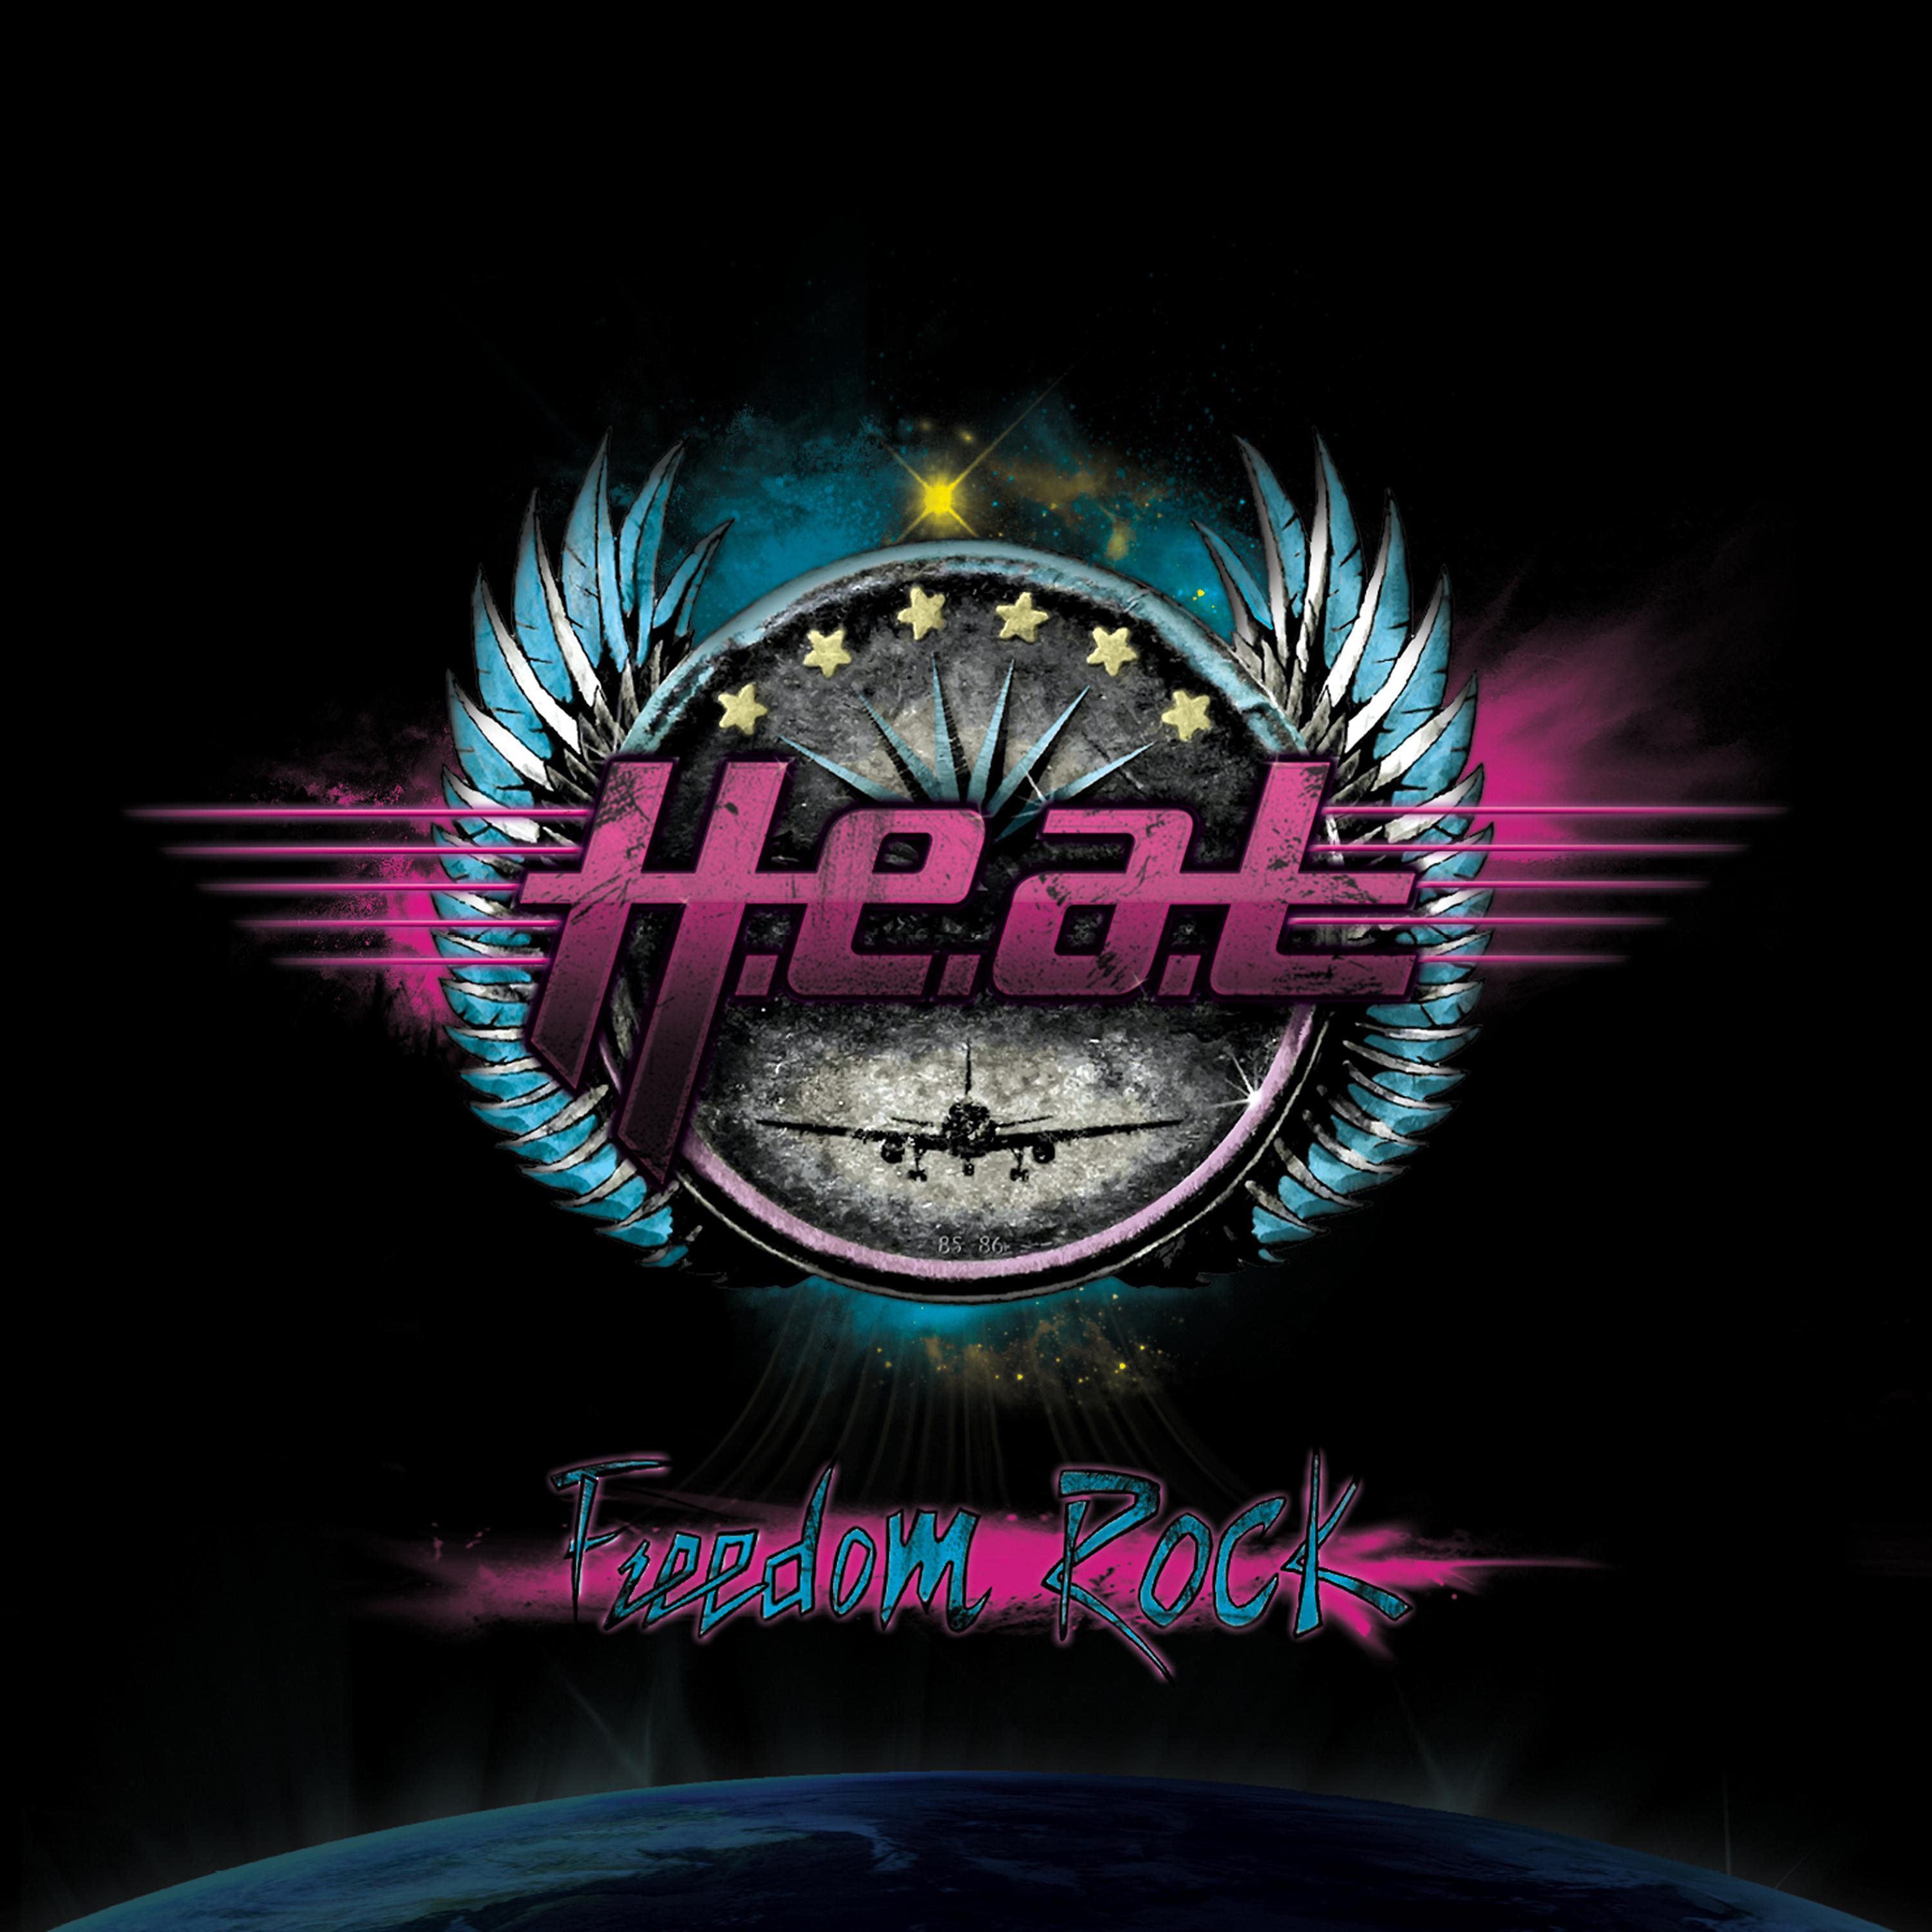 H e a d 1. H.E.A.T - Freedom Rock (2010). Обложки альбомов h.e.a.t. 2010 - Freedom Rock. H.E.A.T - H.E.A.T II (2020).